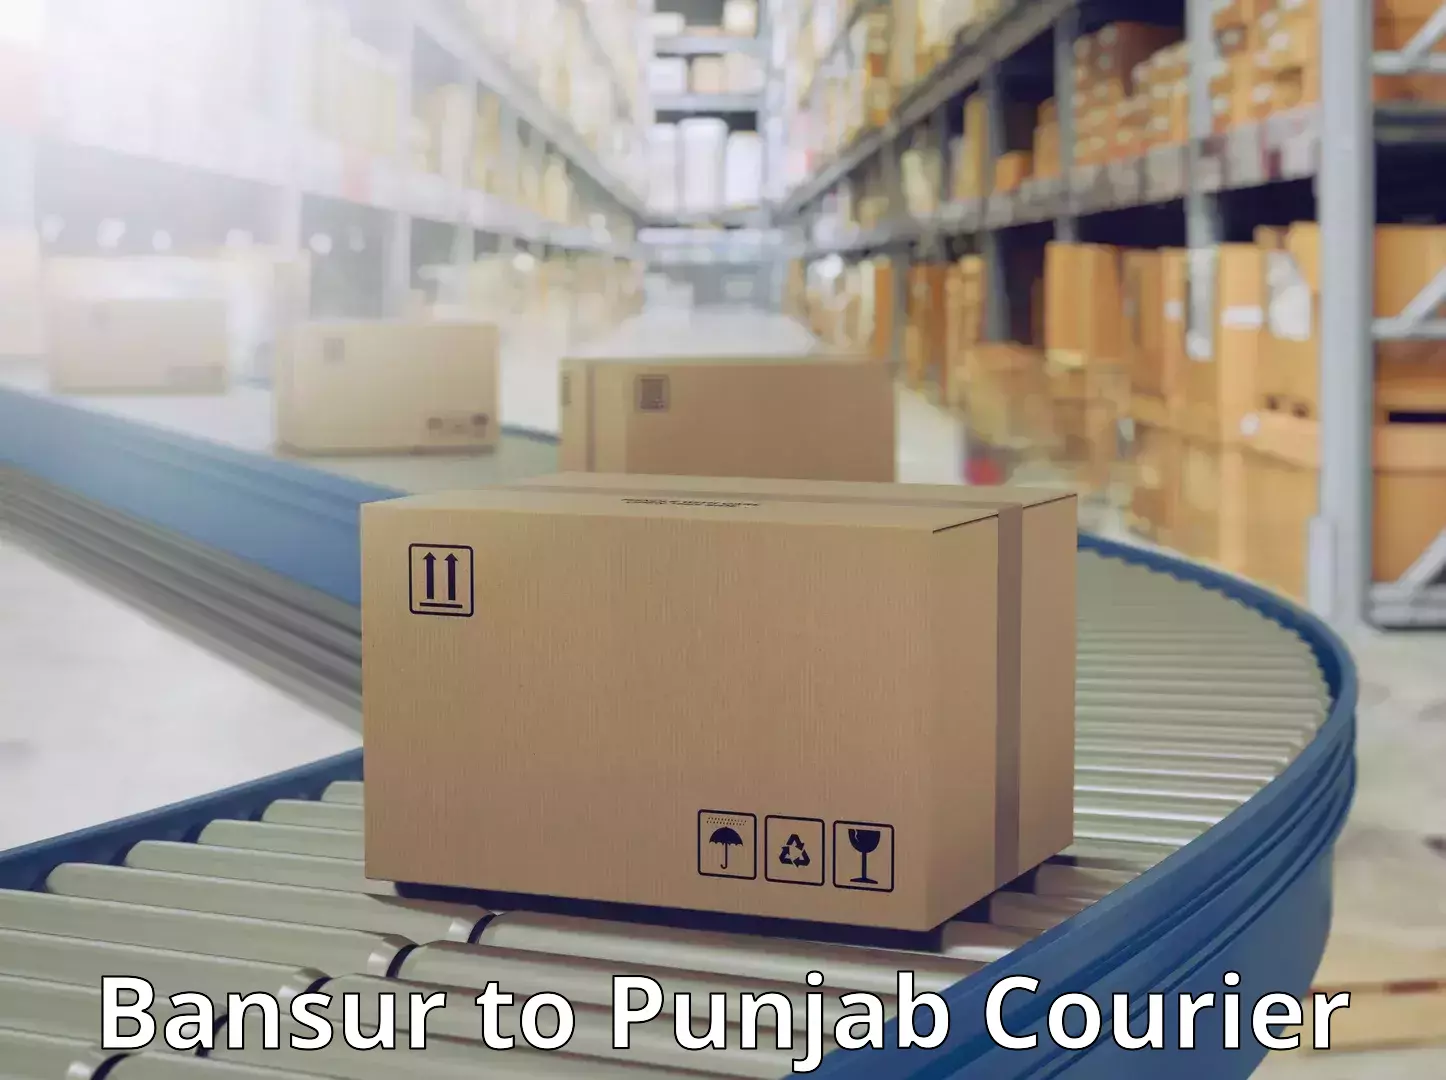 Premium courier solutions Bansur to Punjab